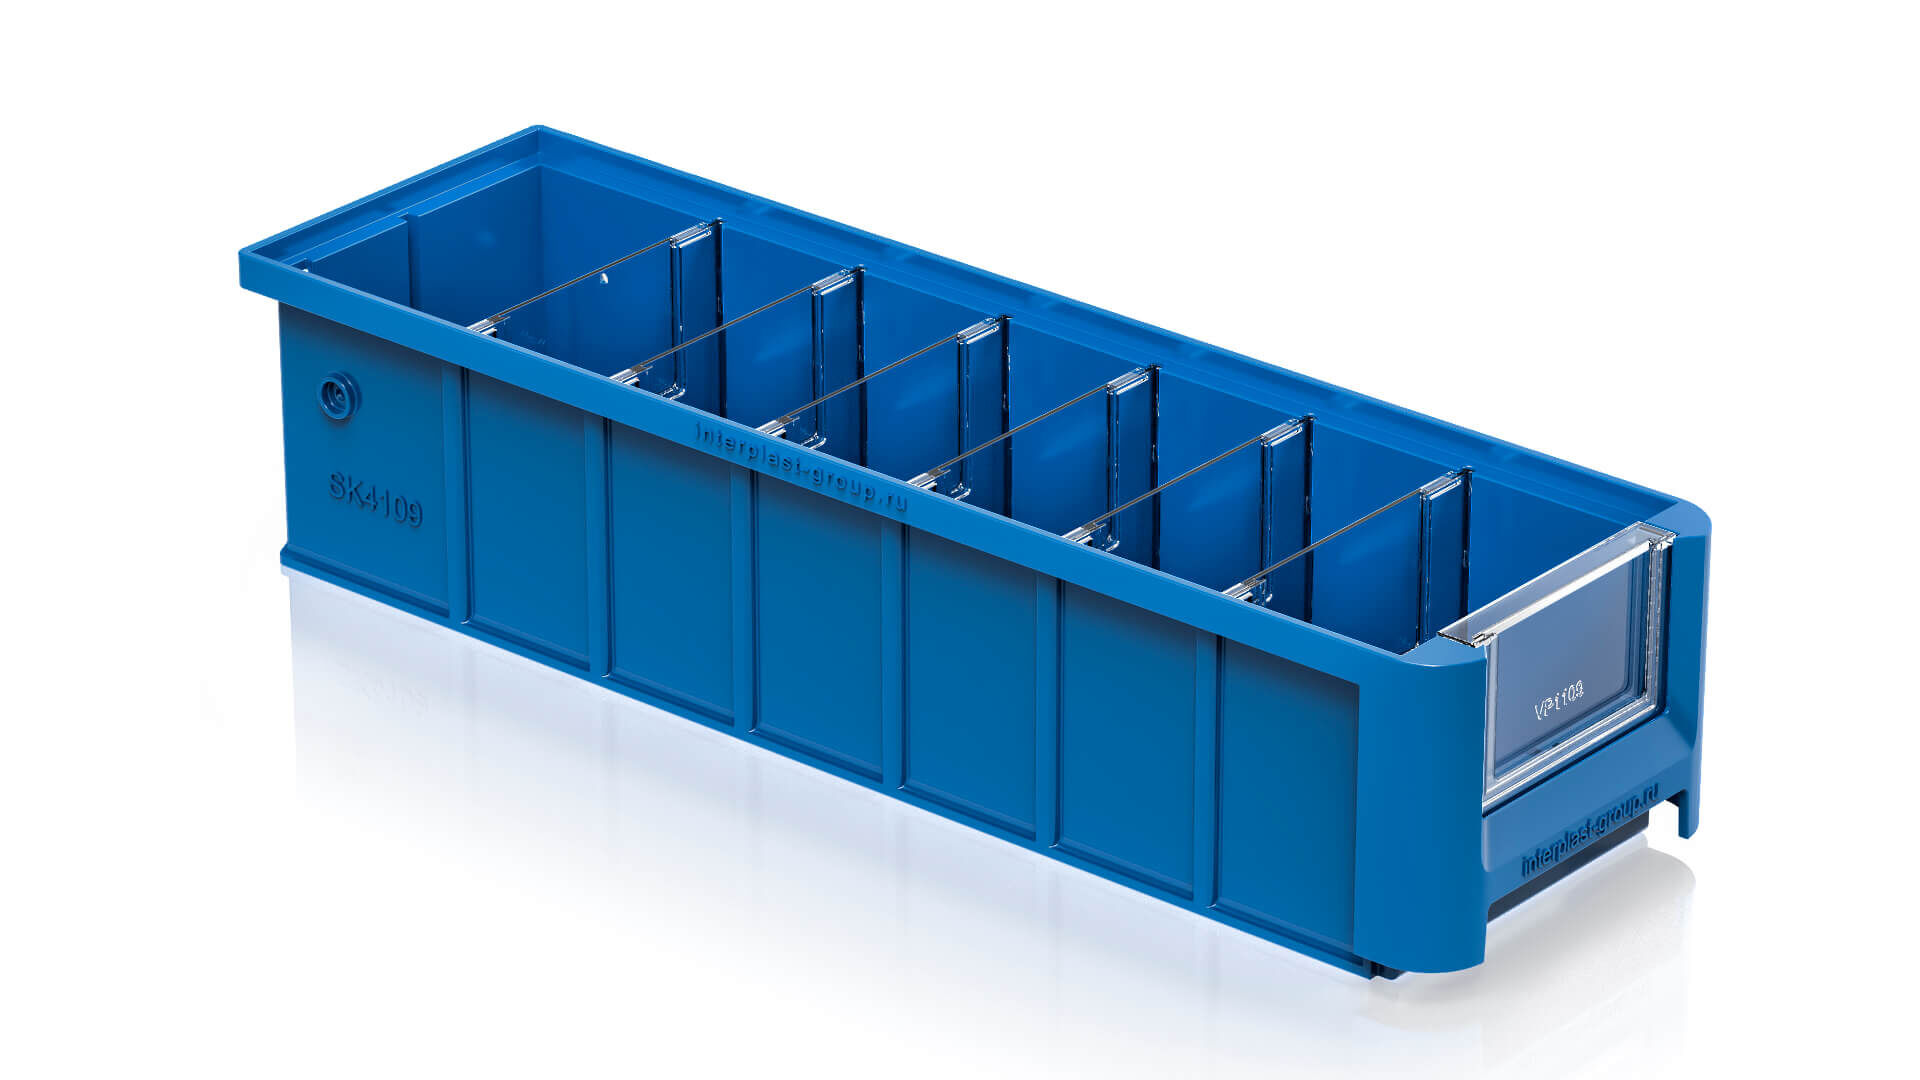 Полочный контейнер SK 4109 голубой